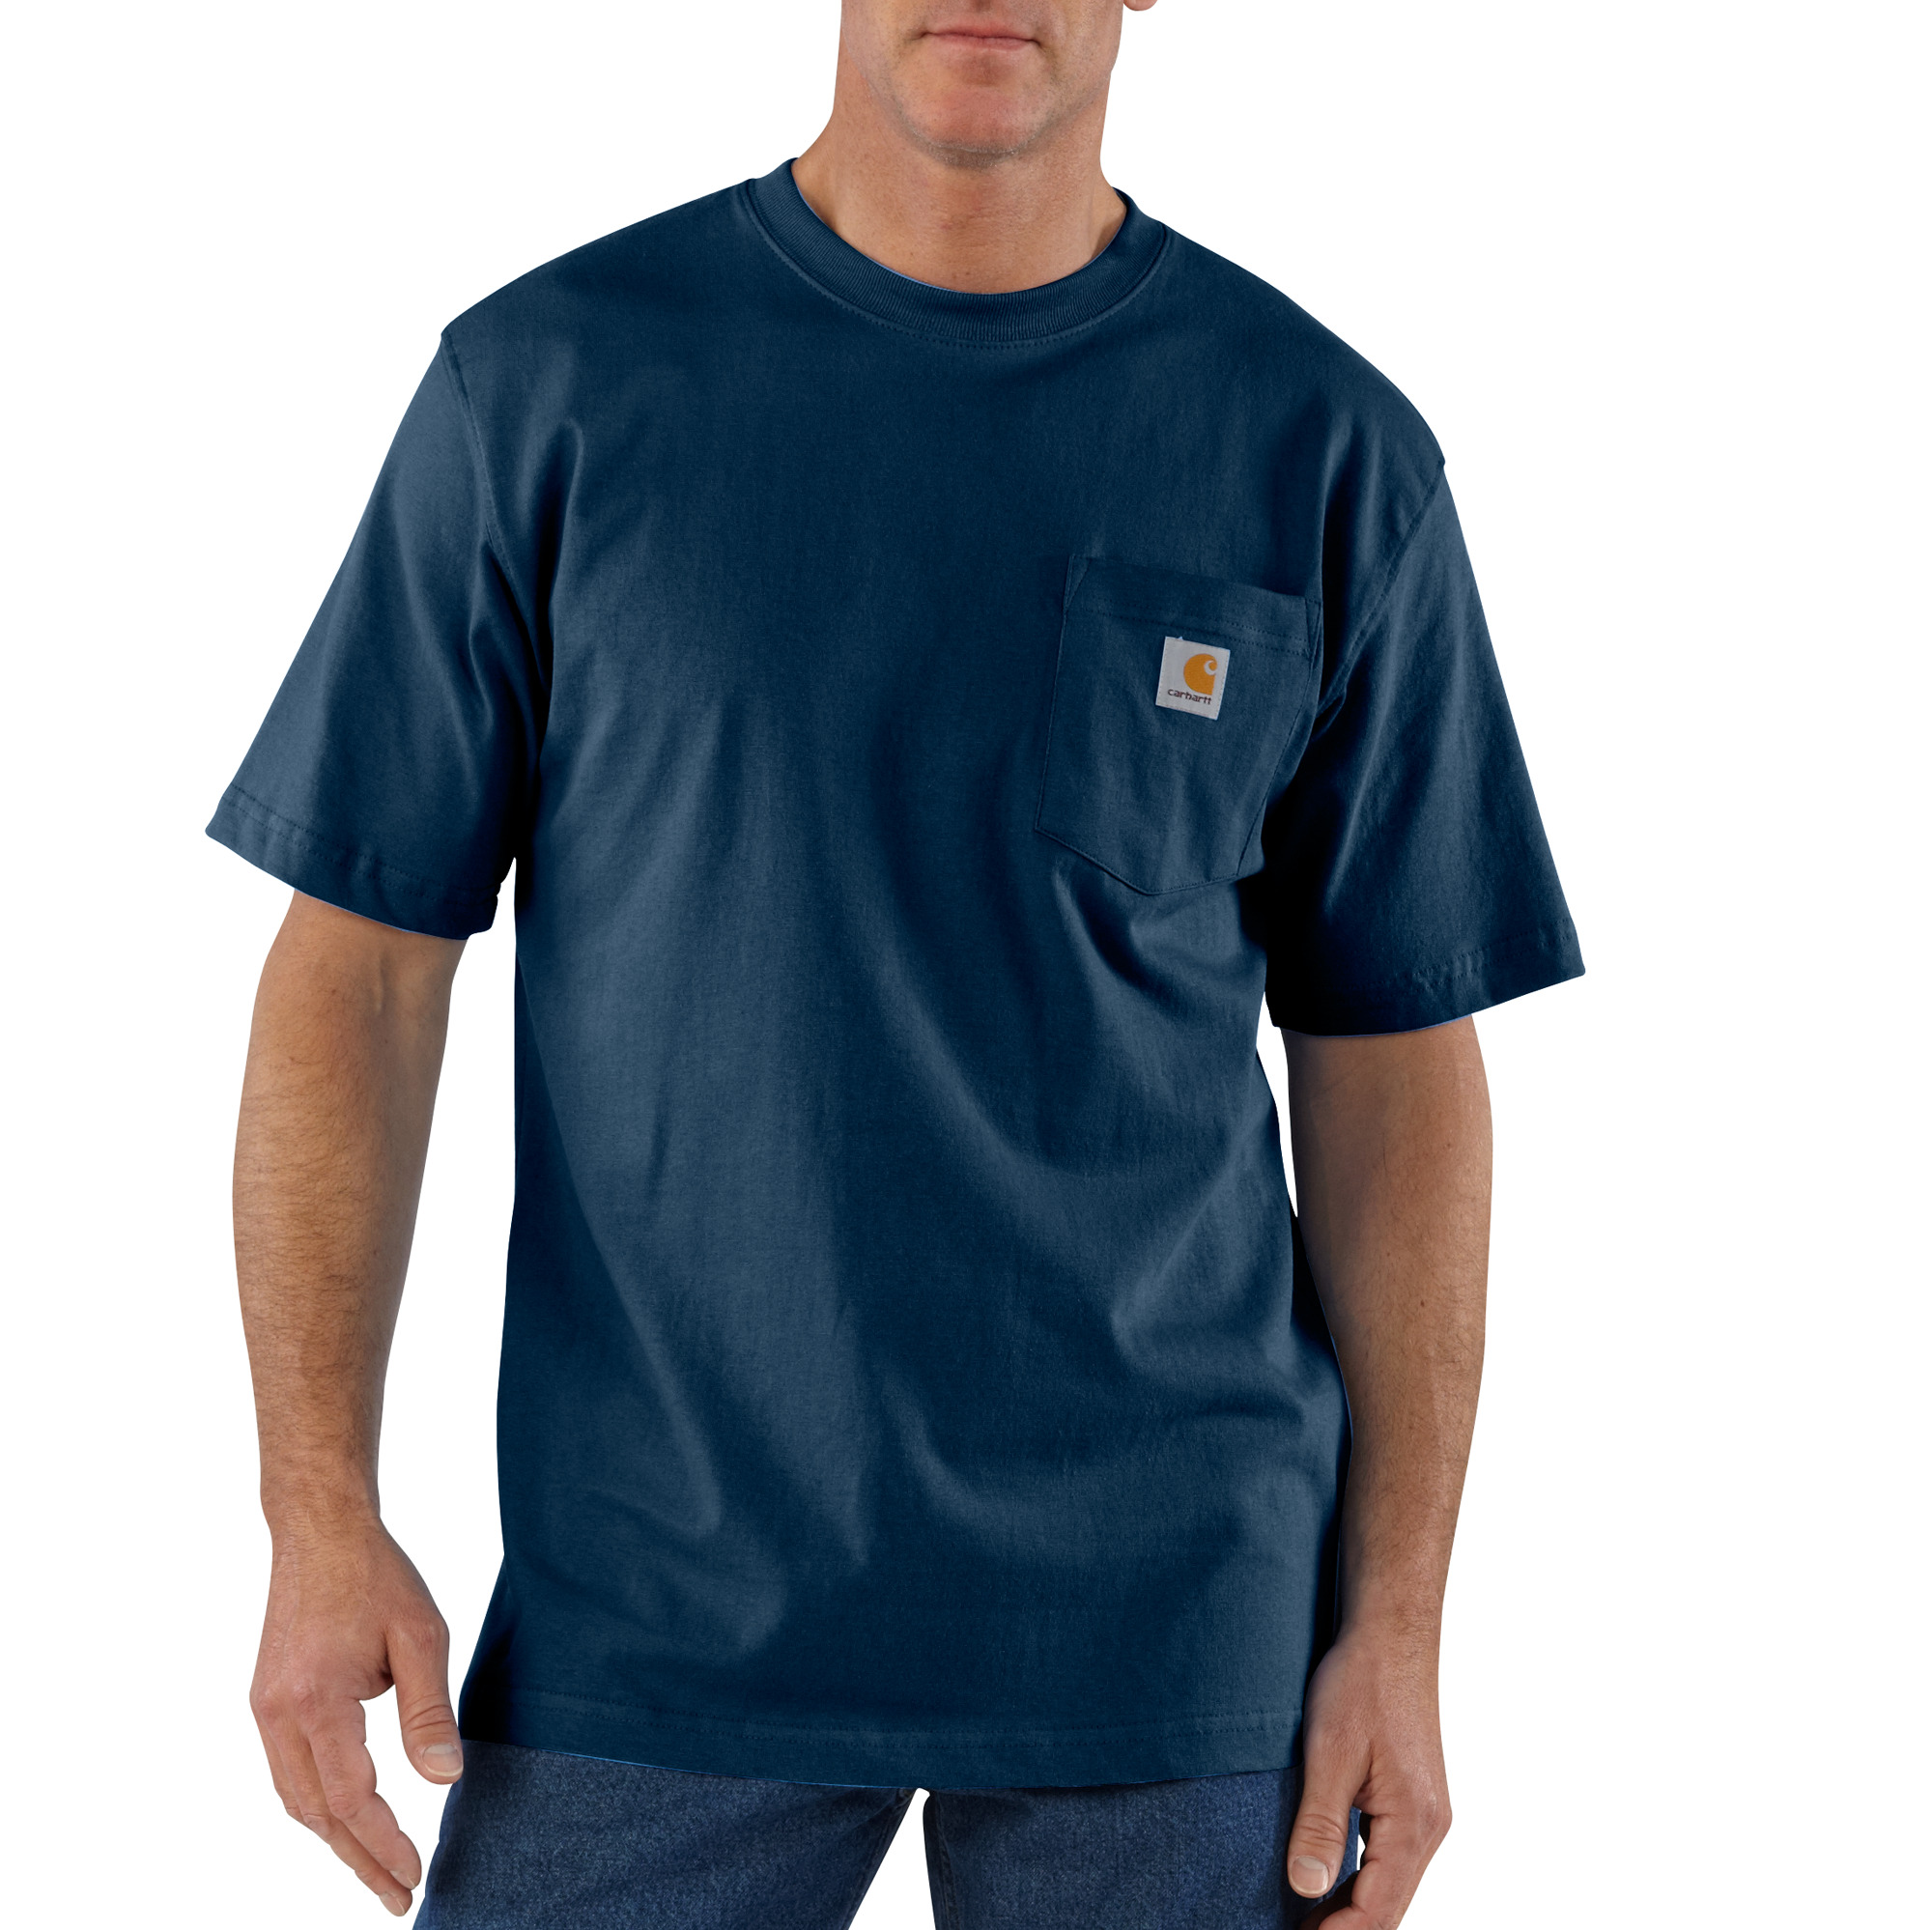 Carhartt Short Sleeve Pocket T-shirt - Navy